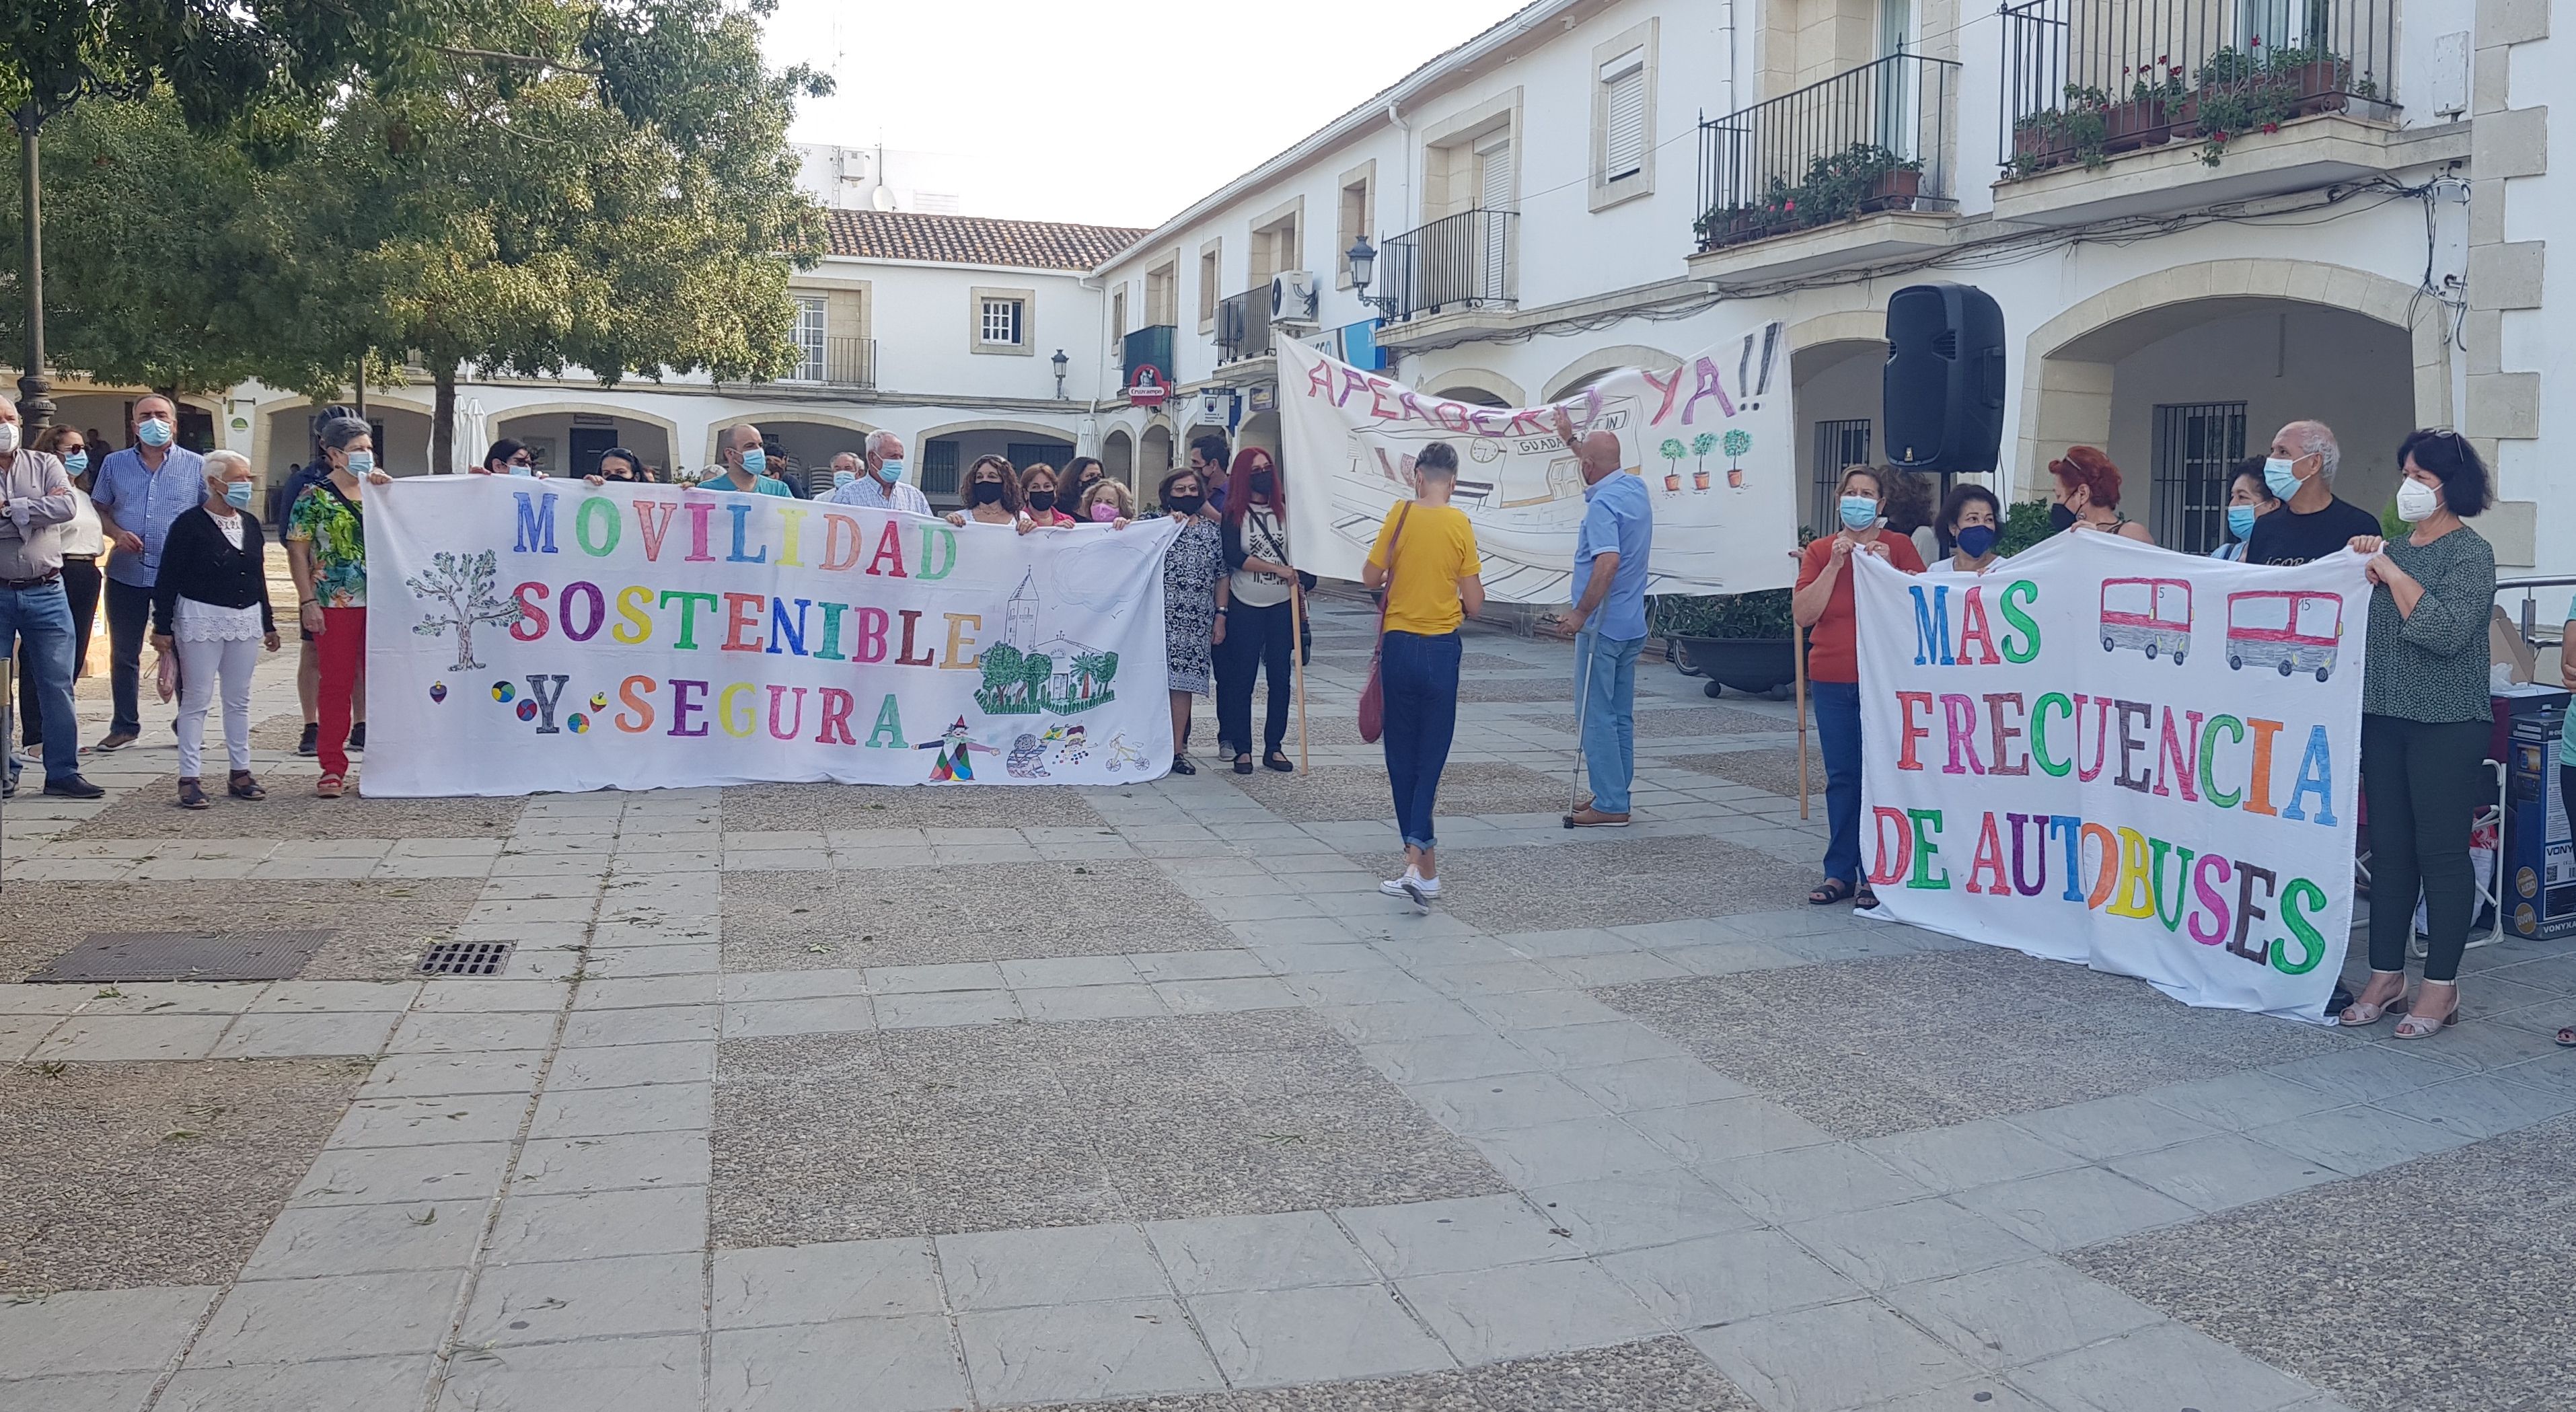 Una movilización pasada celebrada por los vecinos de Guadalcacín para exigir sus reivindicaciones.